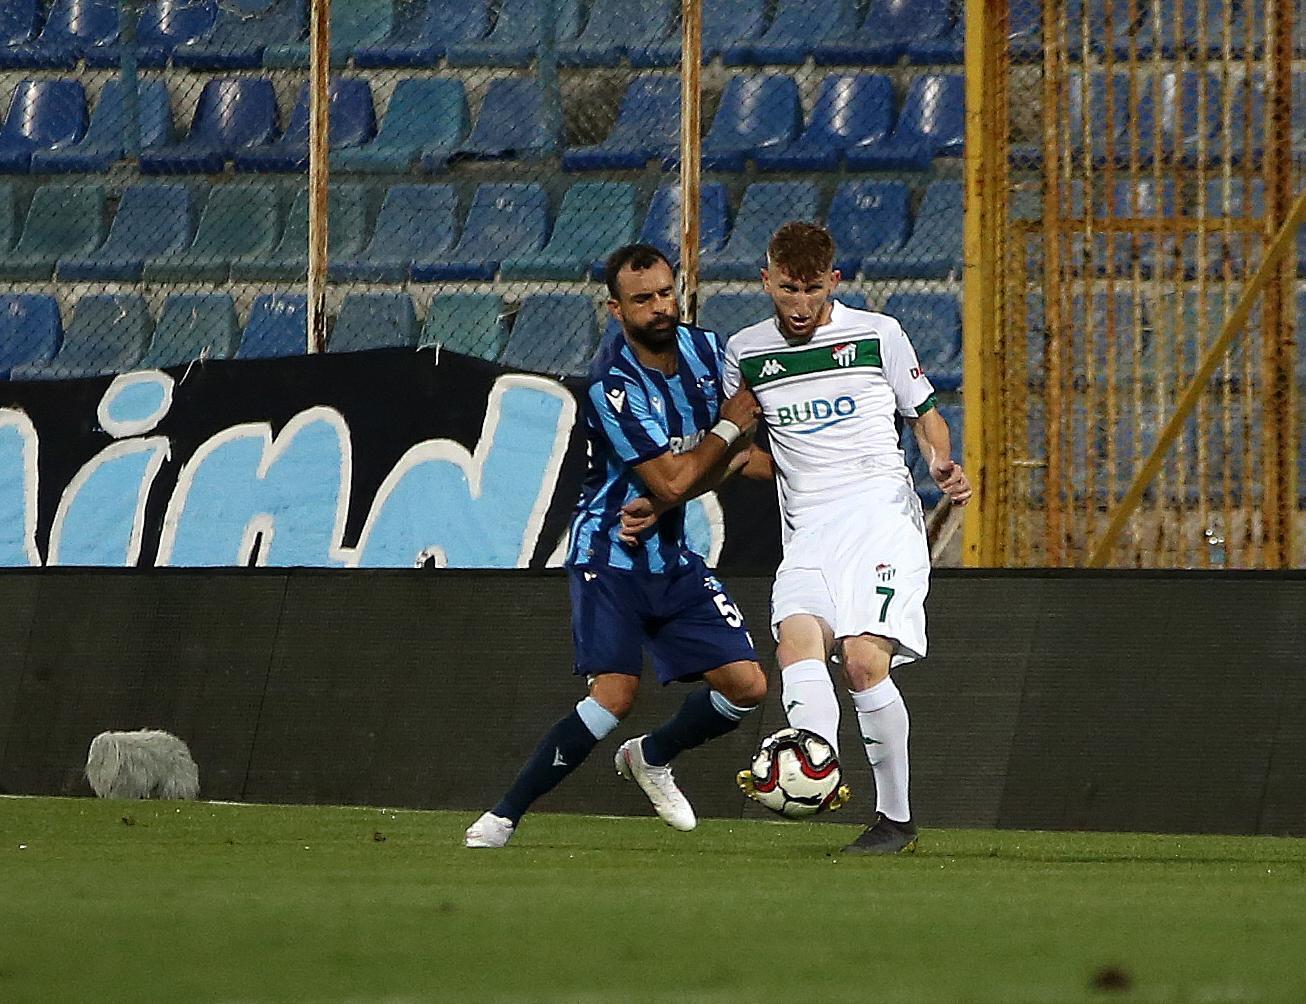 (ÖZET) Adana Demirspor - Bursaspor maç sonucu: 4-1